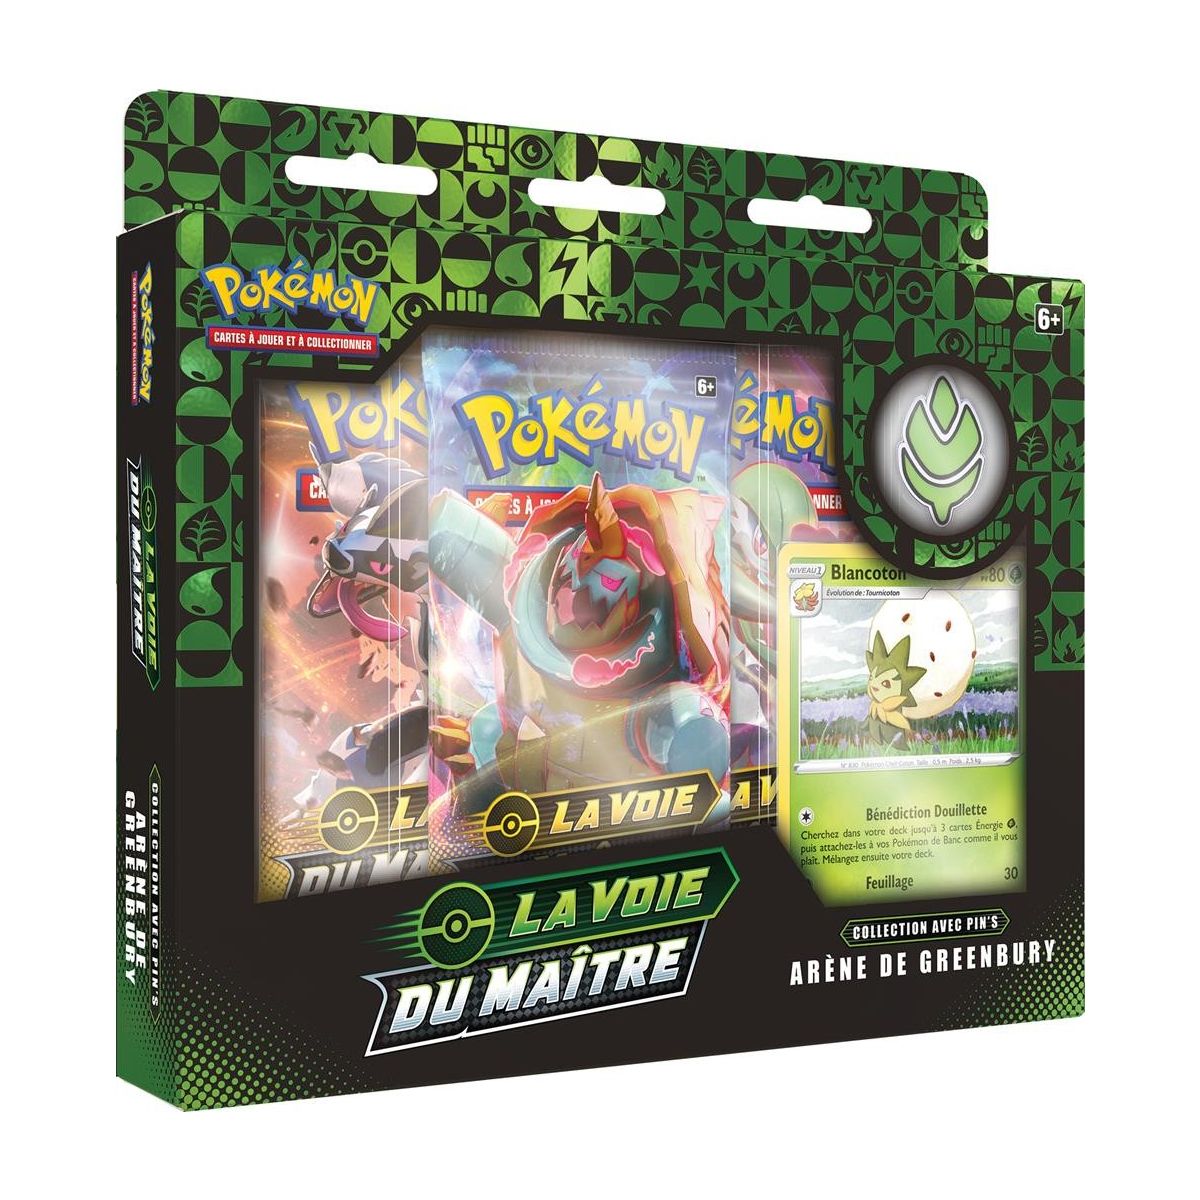 Pokémon - Pin's Box - Greenbury Arena - The Master's Way [EB3.5] - FR